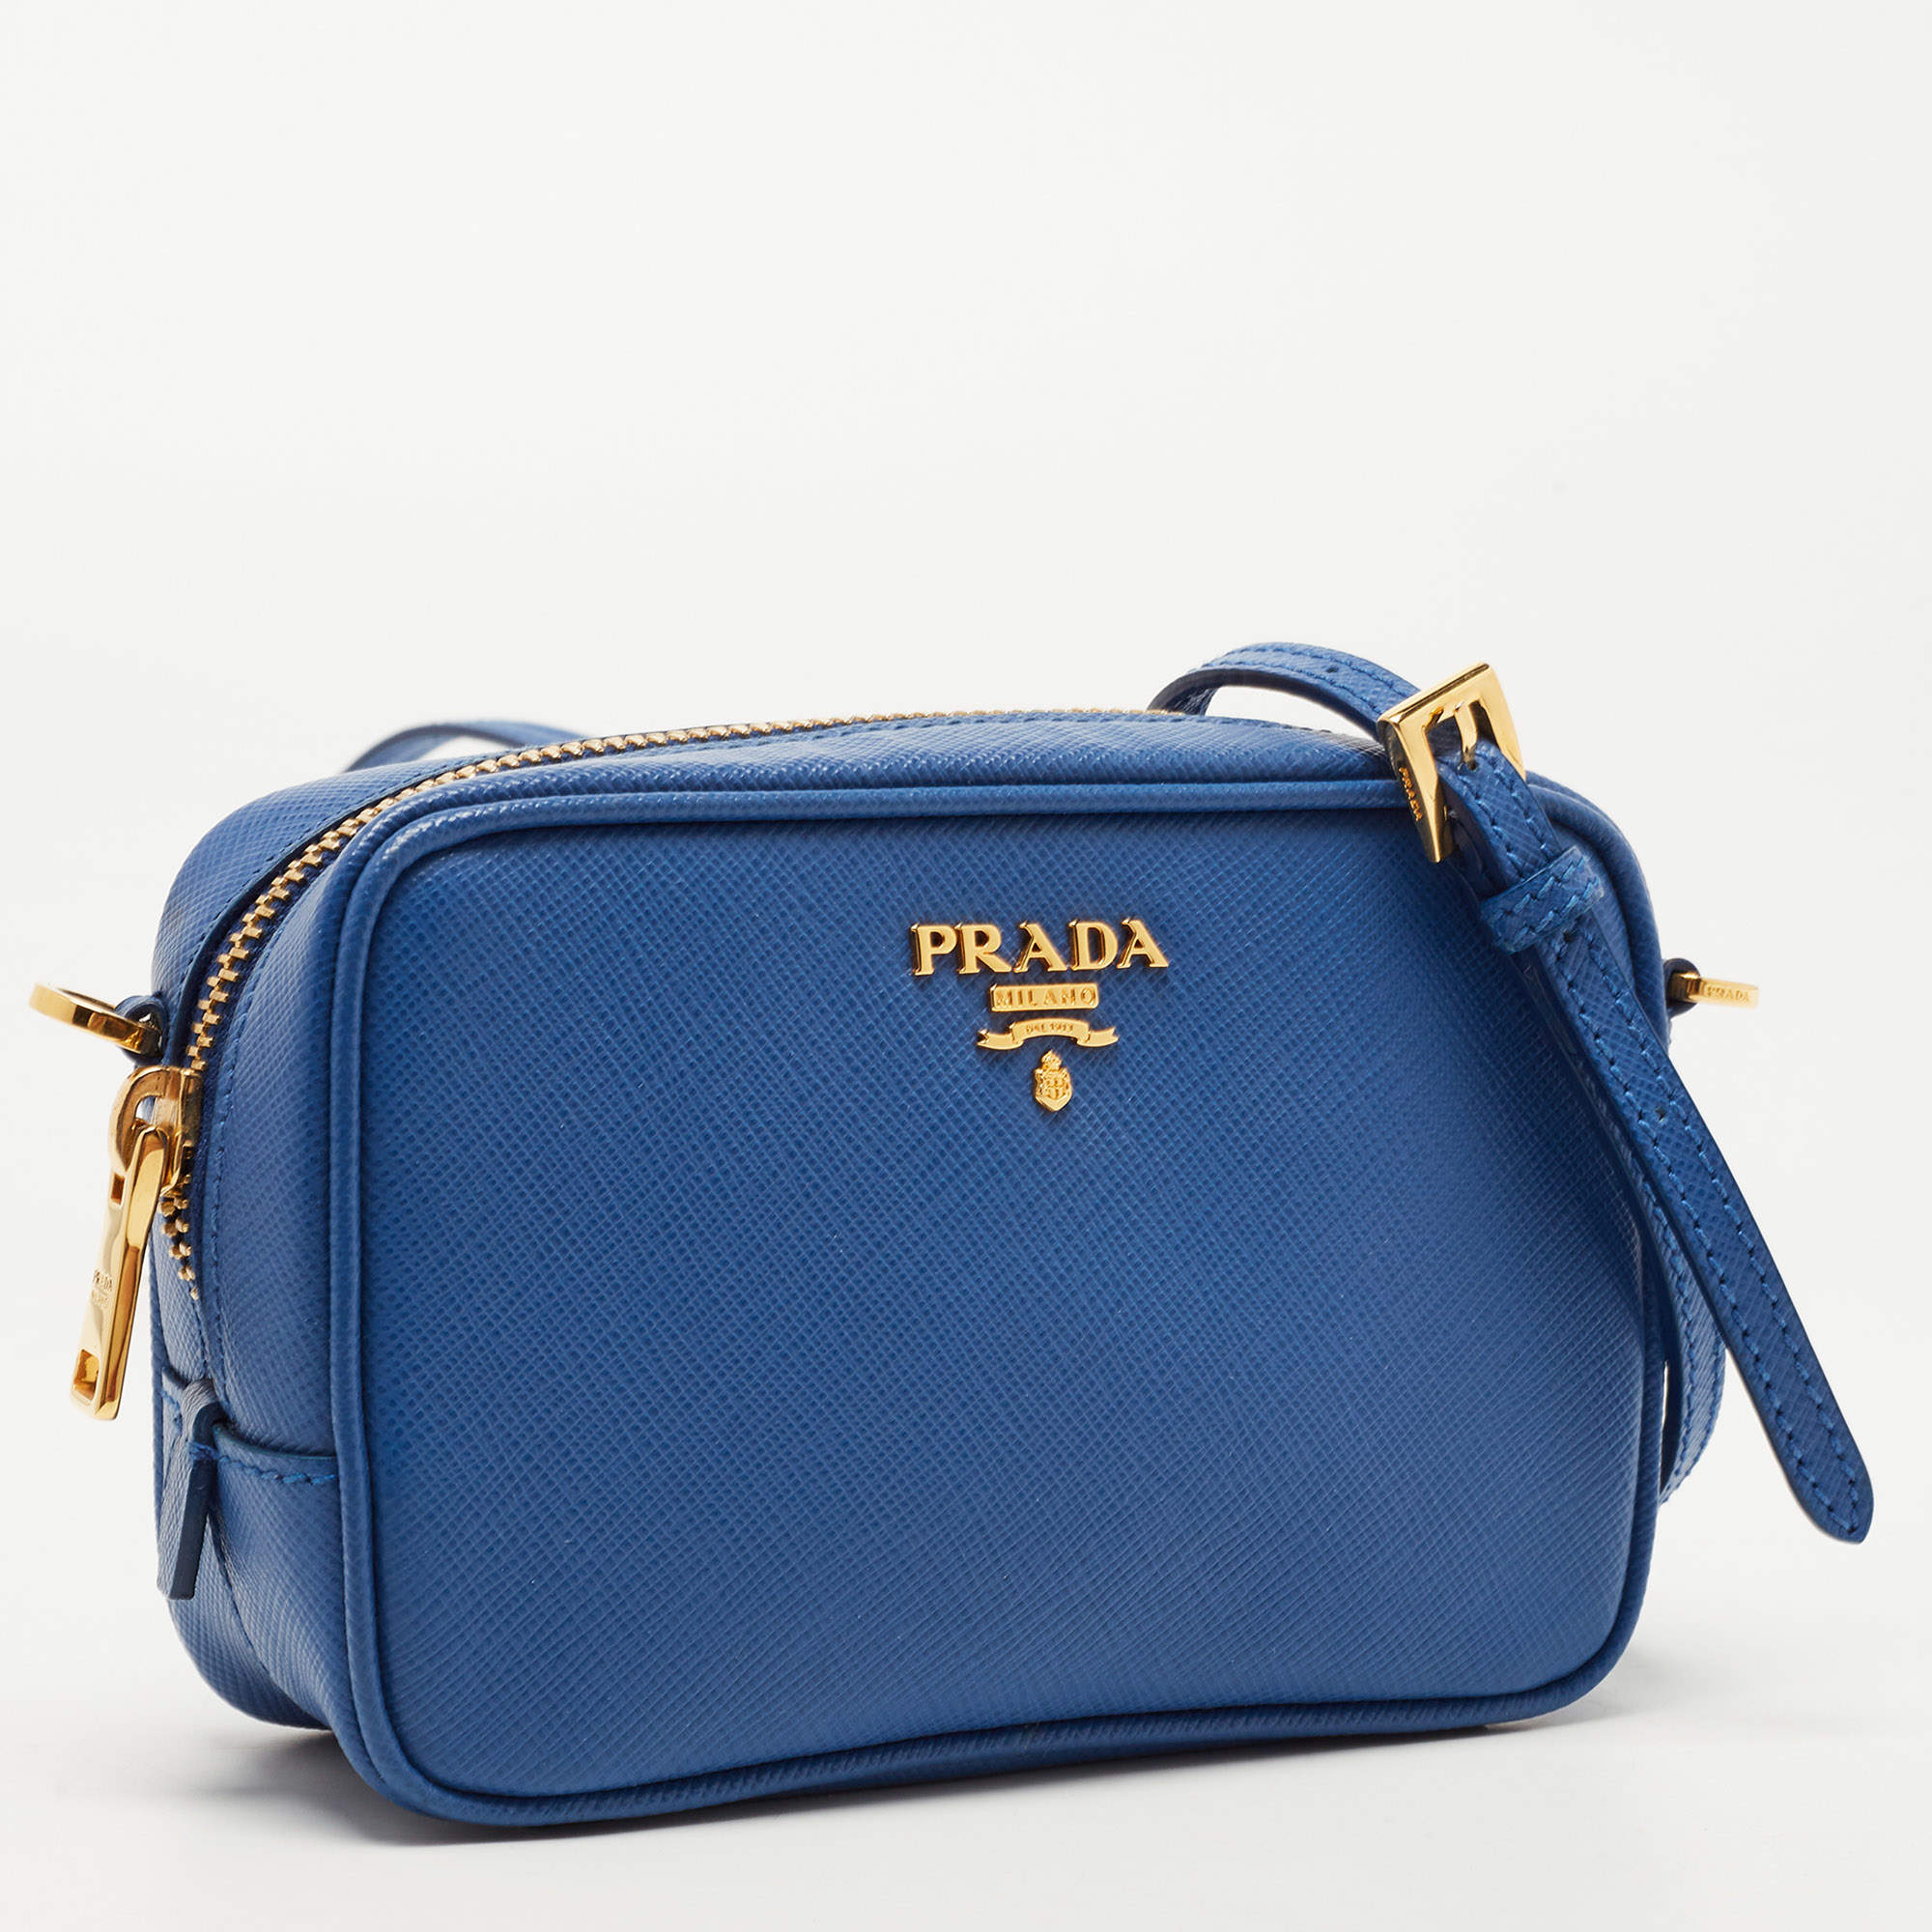 Prada Saffiano Lux Crossbody Bag - Blue Crossbody Bags, Handbags